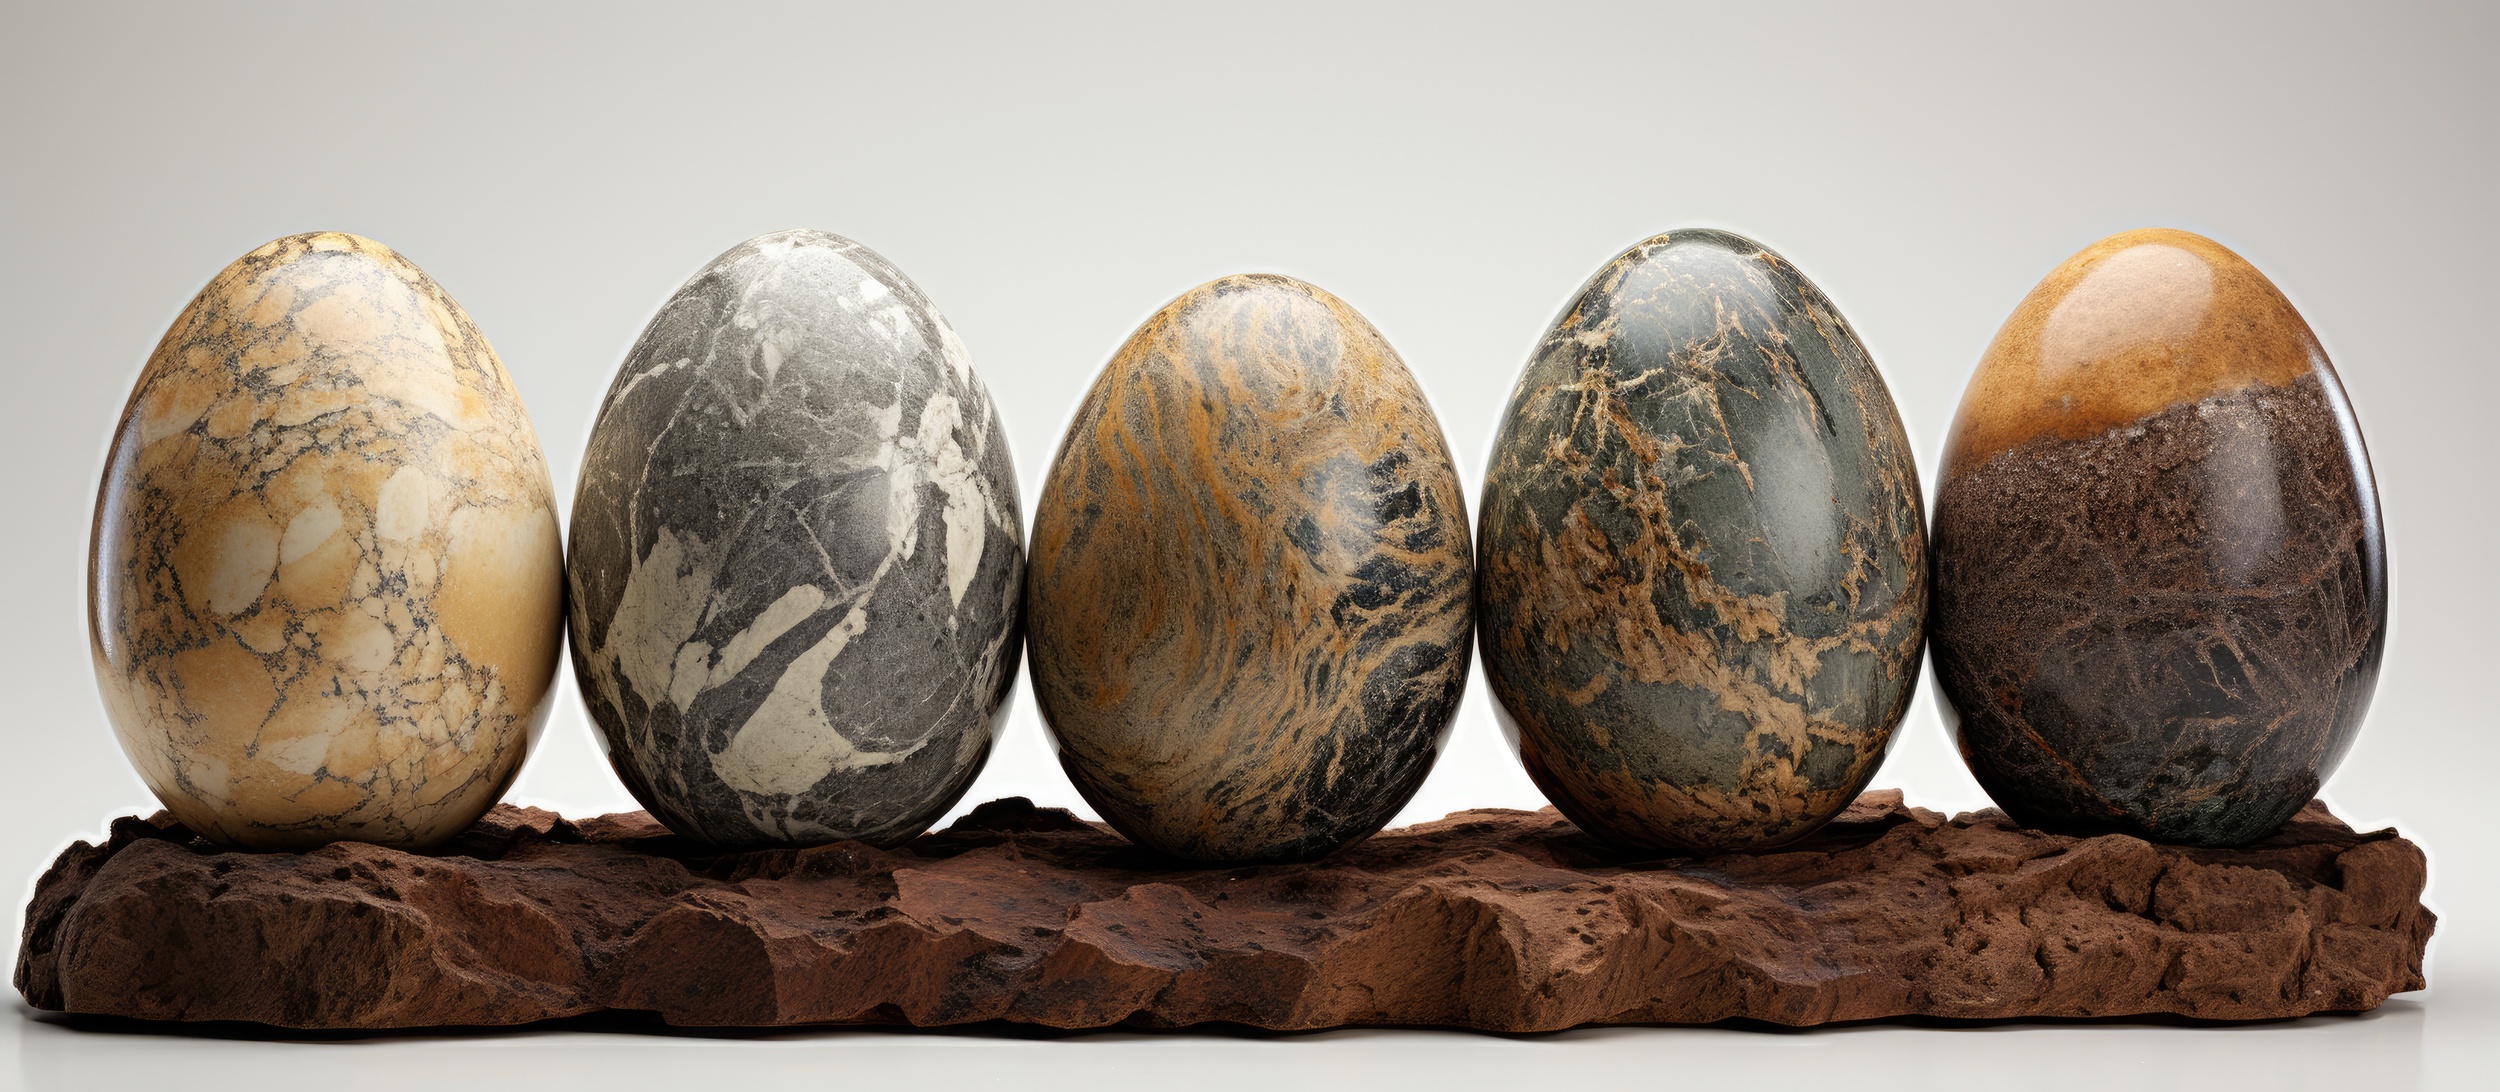 Photo de l'œuf antique, vieux de 1 700 ans, retrouvé lors de fouilles au centre de l'Angleterre. L'artefact mesure quelques 4,5 cm. © 2ragon, Adobe Stock 